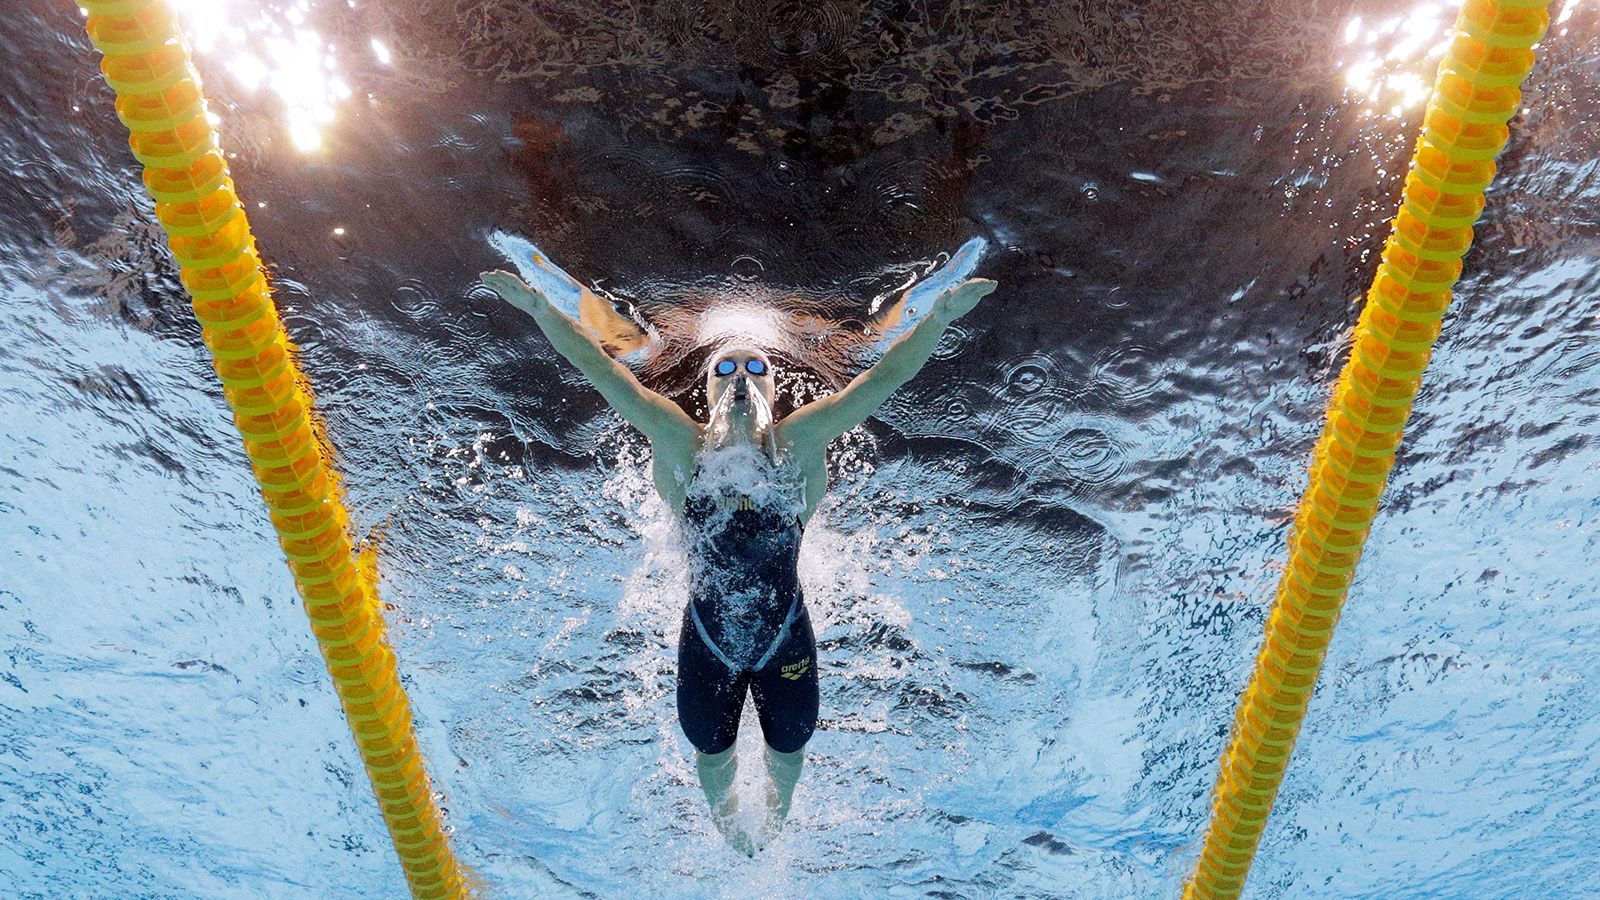 Ріо-2016: спортсмени продовжують бити світові рекорди в олімпійському басейні